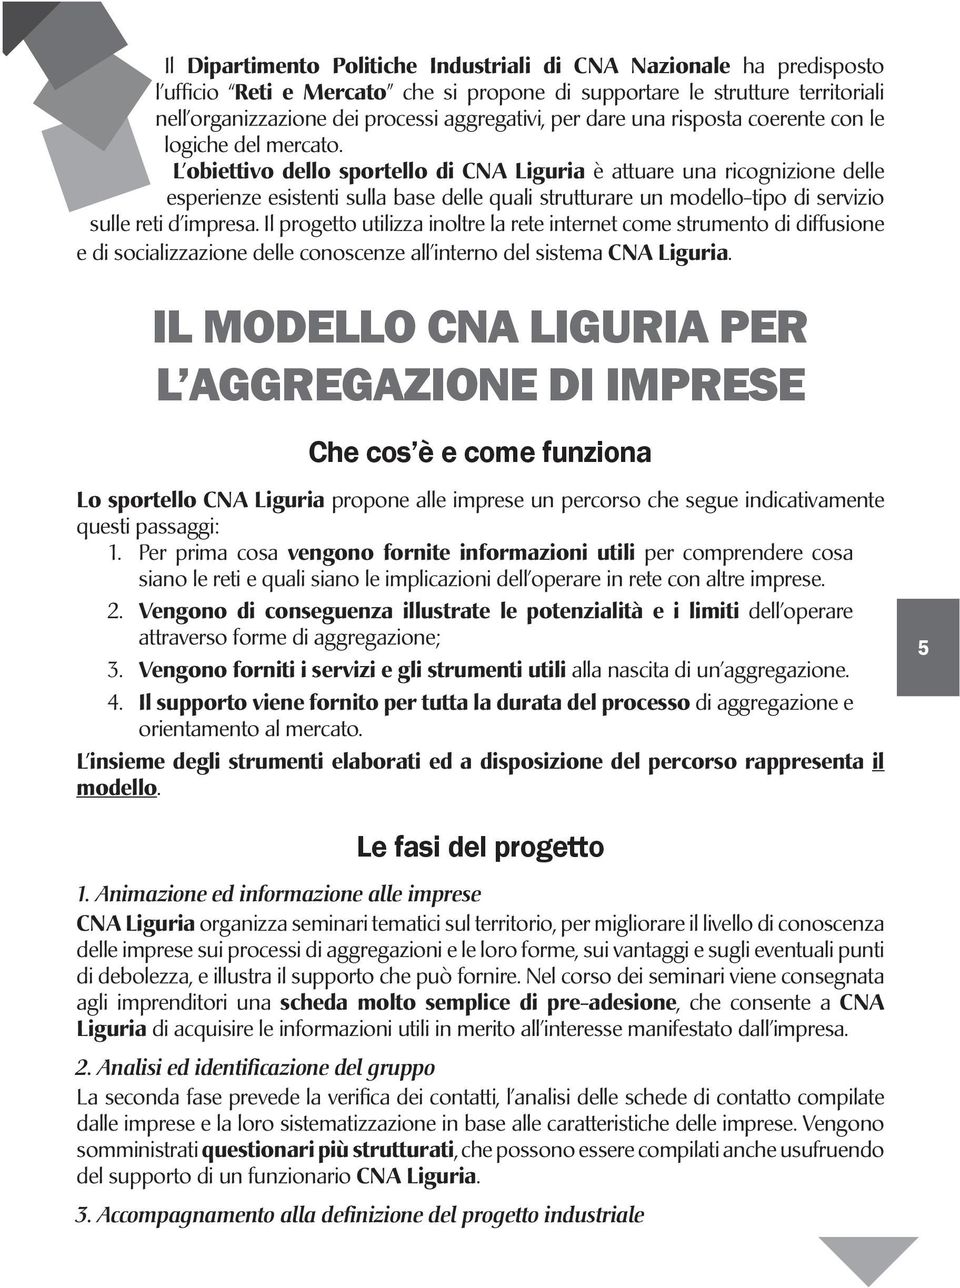 L obiettivo dello sportello di CNA Liguria è attuare una ricognizione delle esperienze esistenti sulla base delle quali strutturare un modello-tipo di servizio sulle reti d impresa.